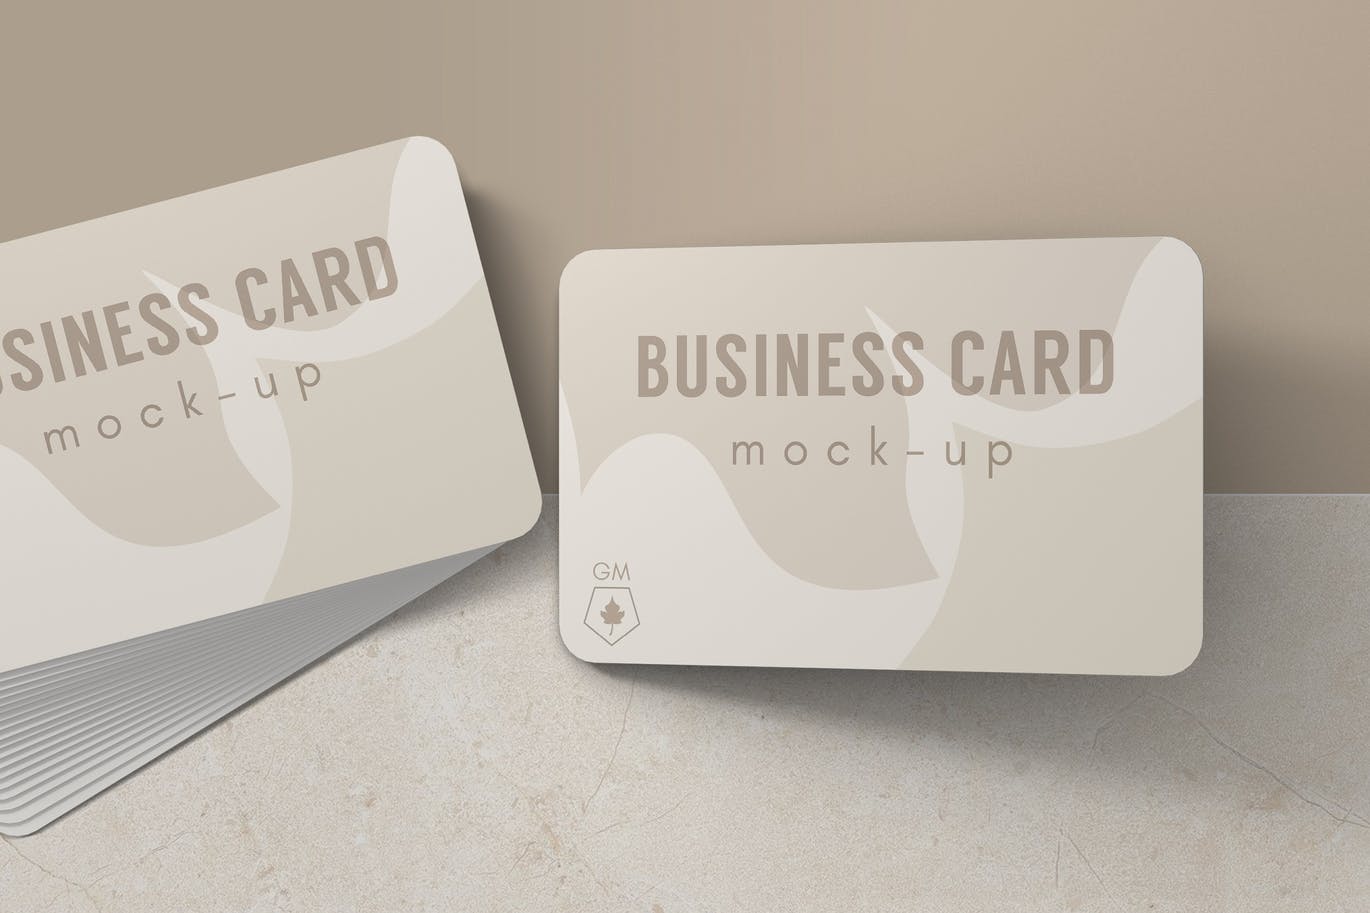 企业名片效果图设计样机v6 Business Card Mockup V.6设计素材模板